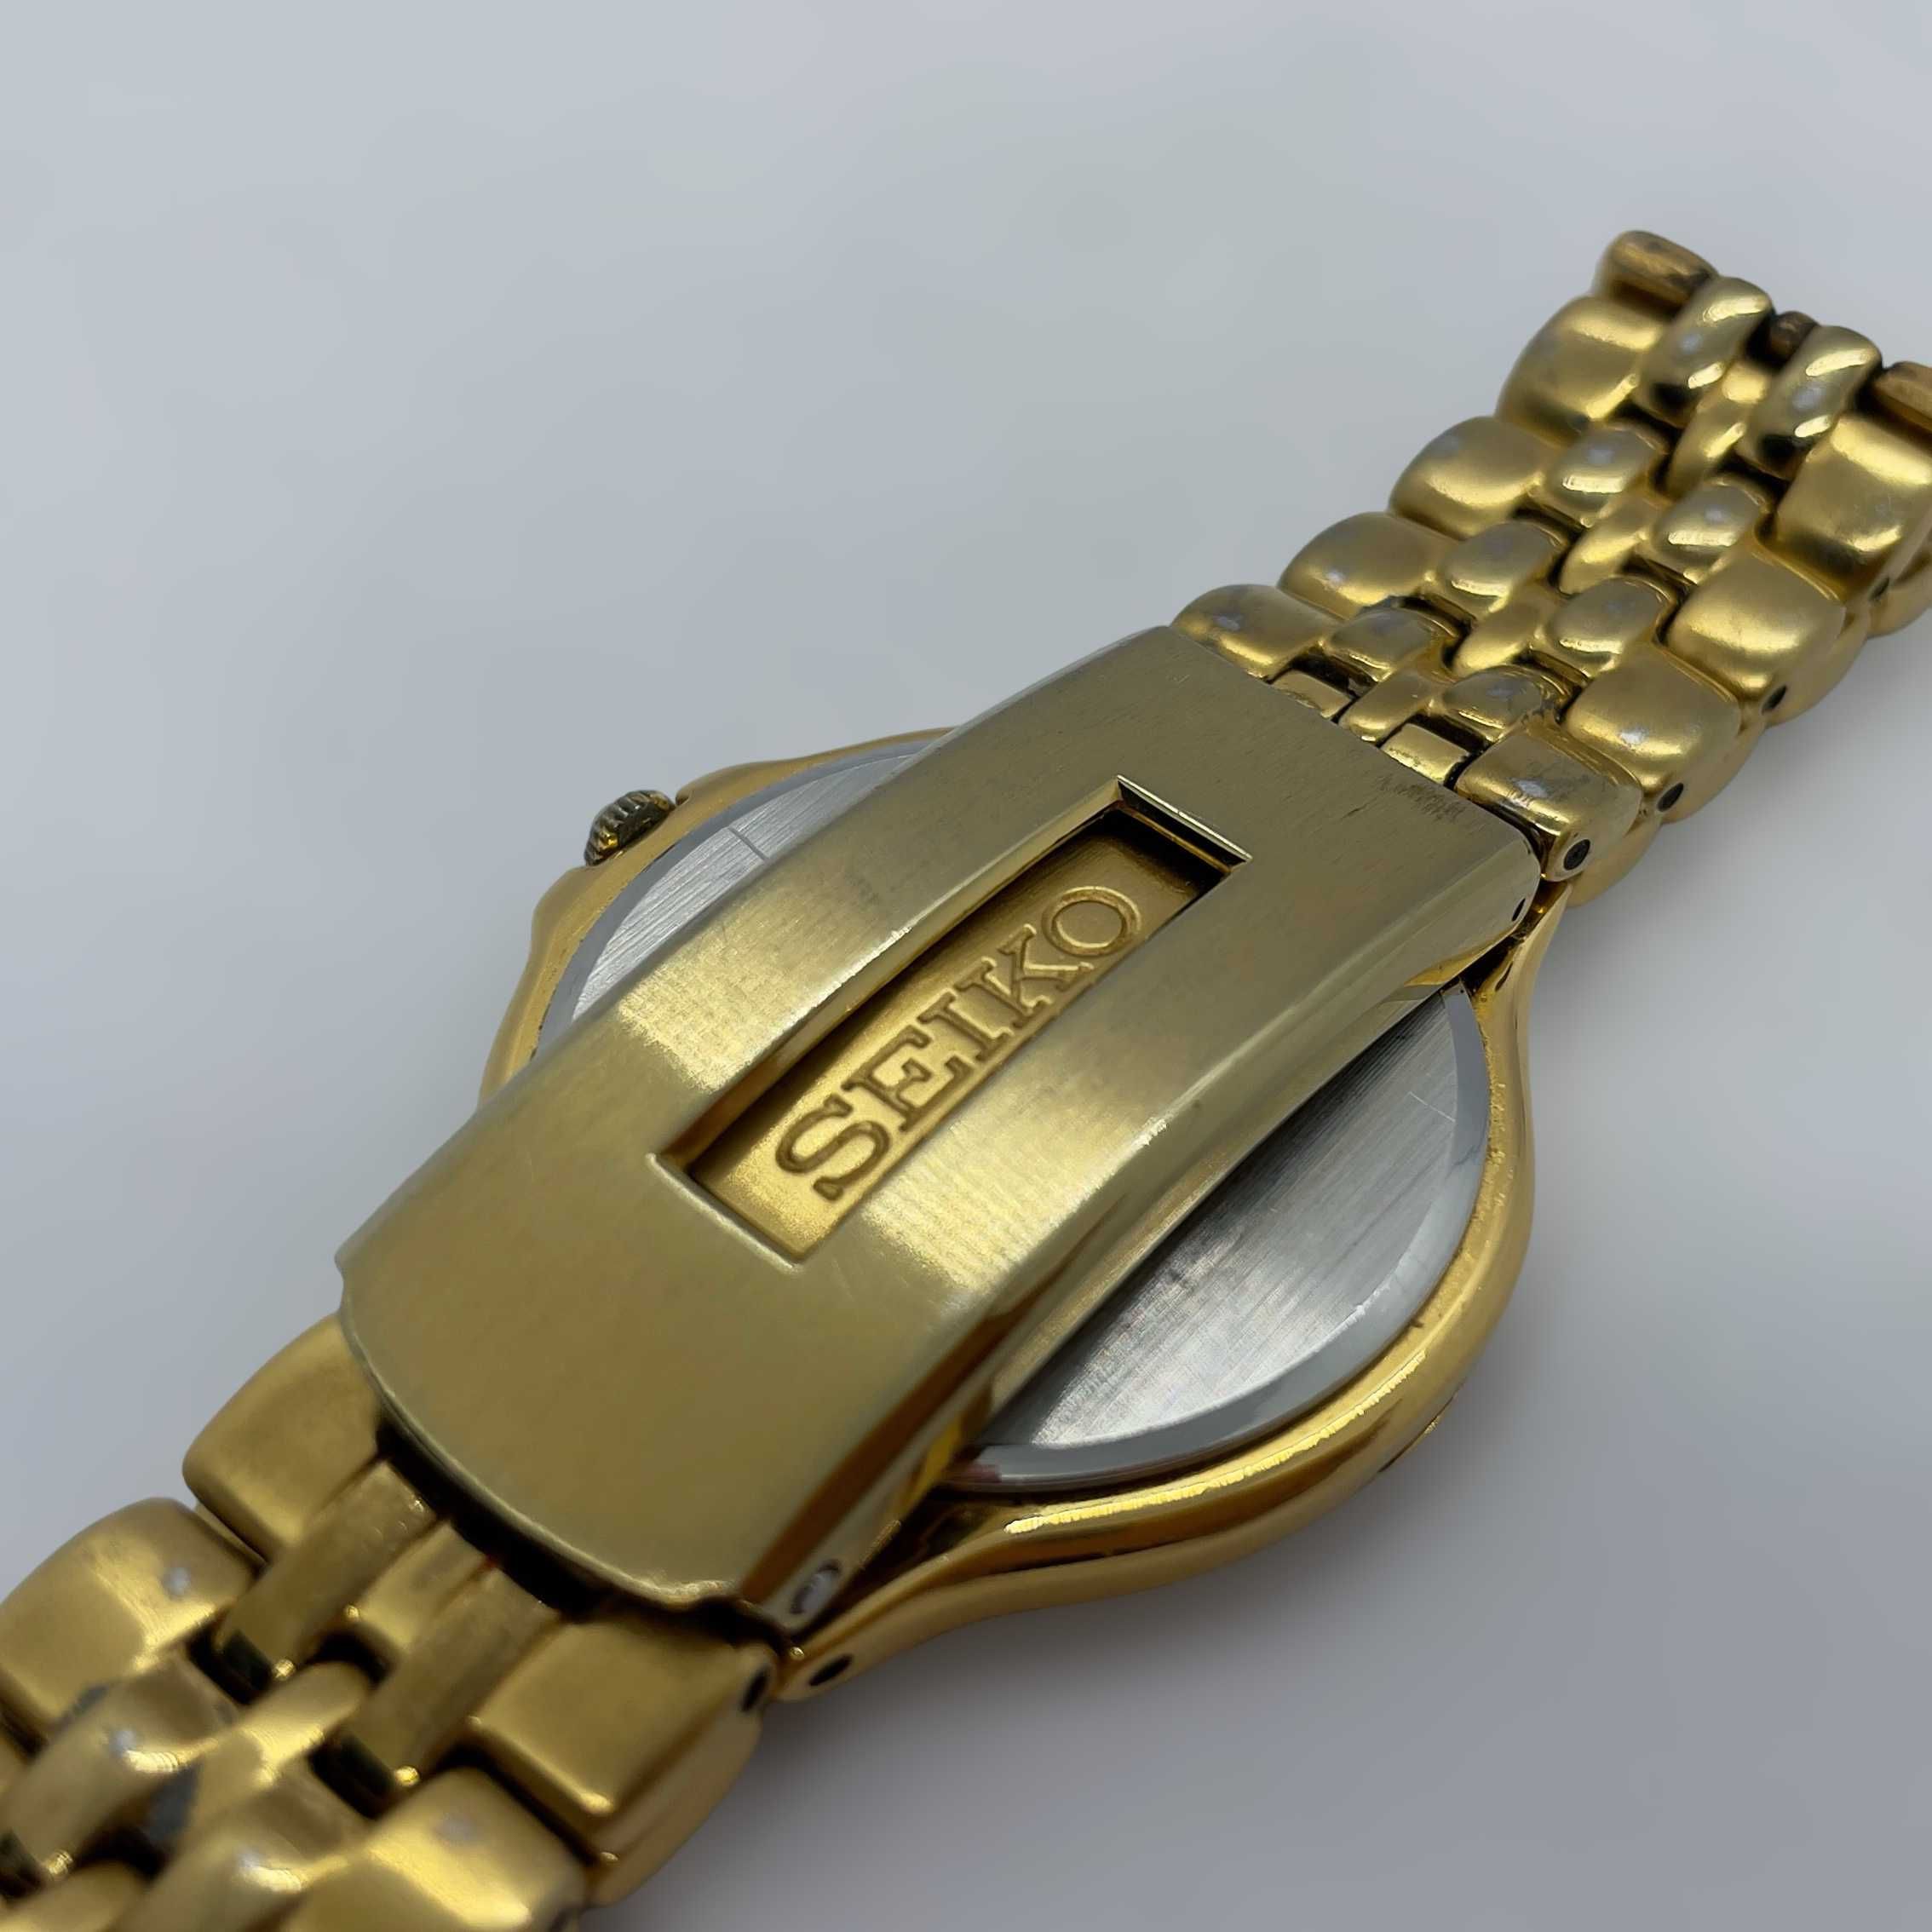 Позлатен ръчен мъжки часовник Seiko 5E29 - 6B80 R1